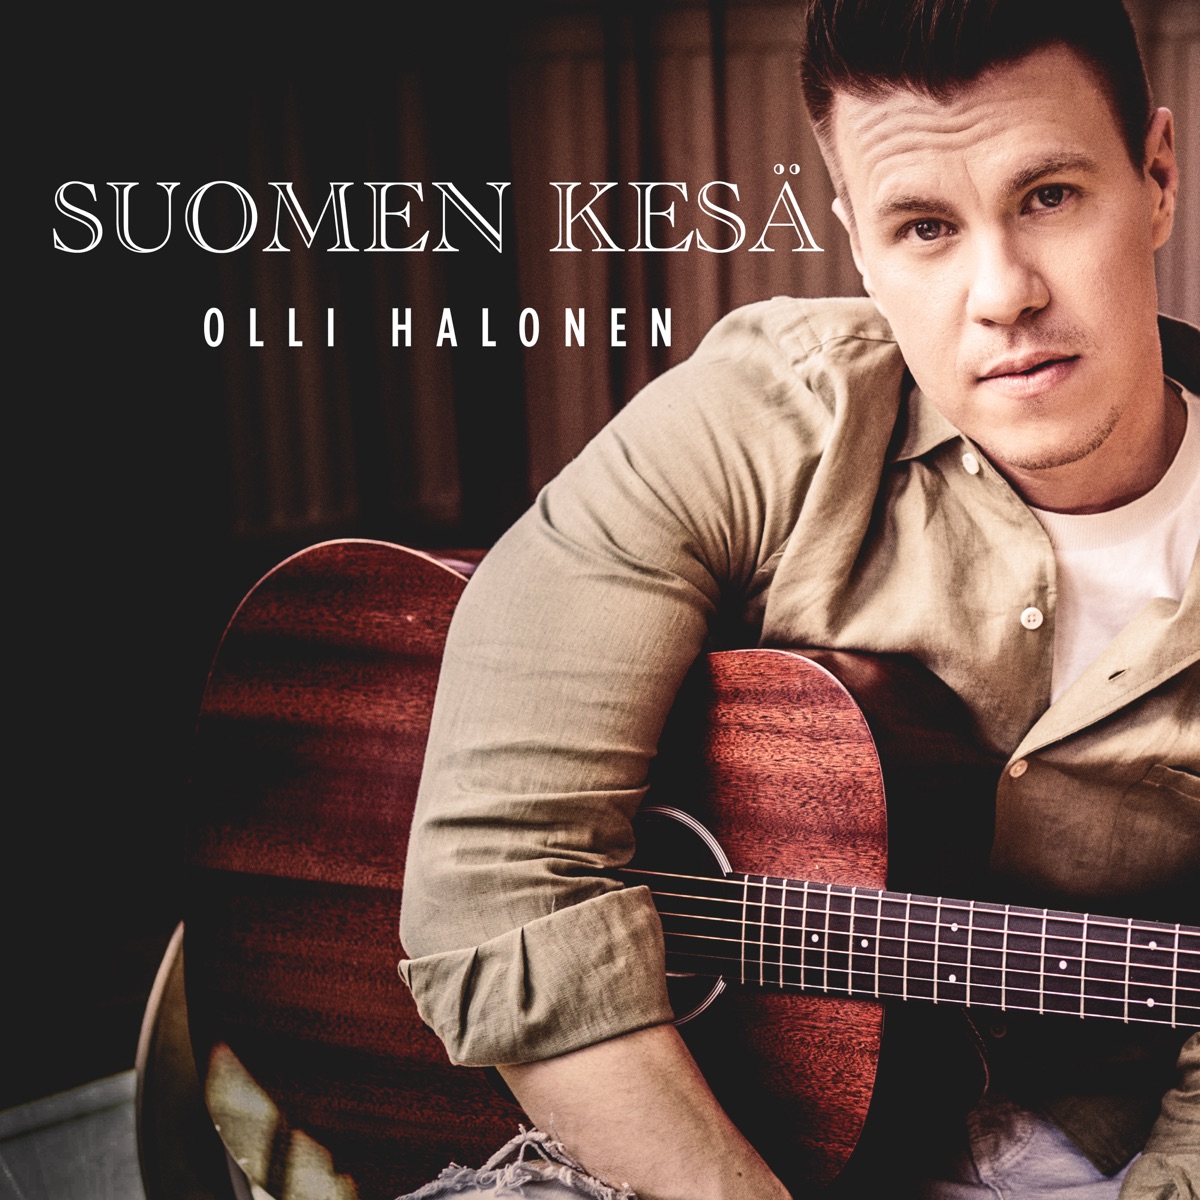 Suomen kesä - Single - Album by Olli Halonen - Apple Music